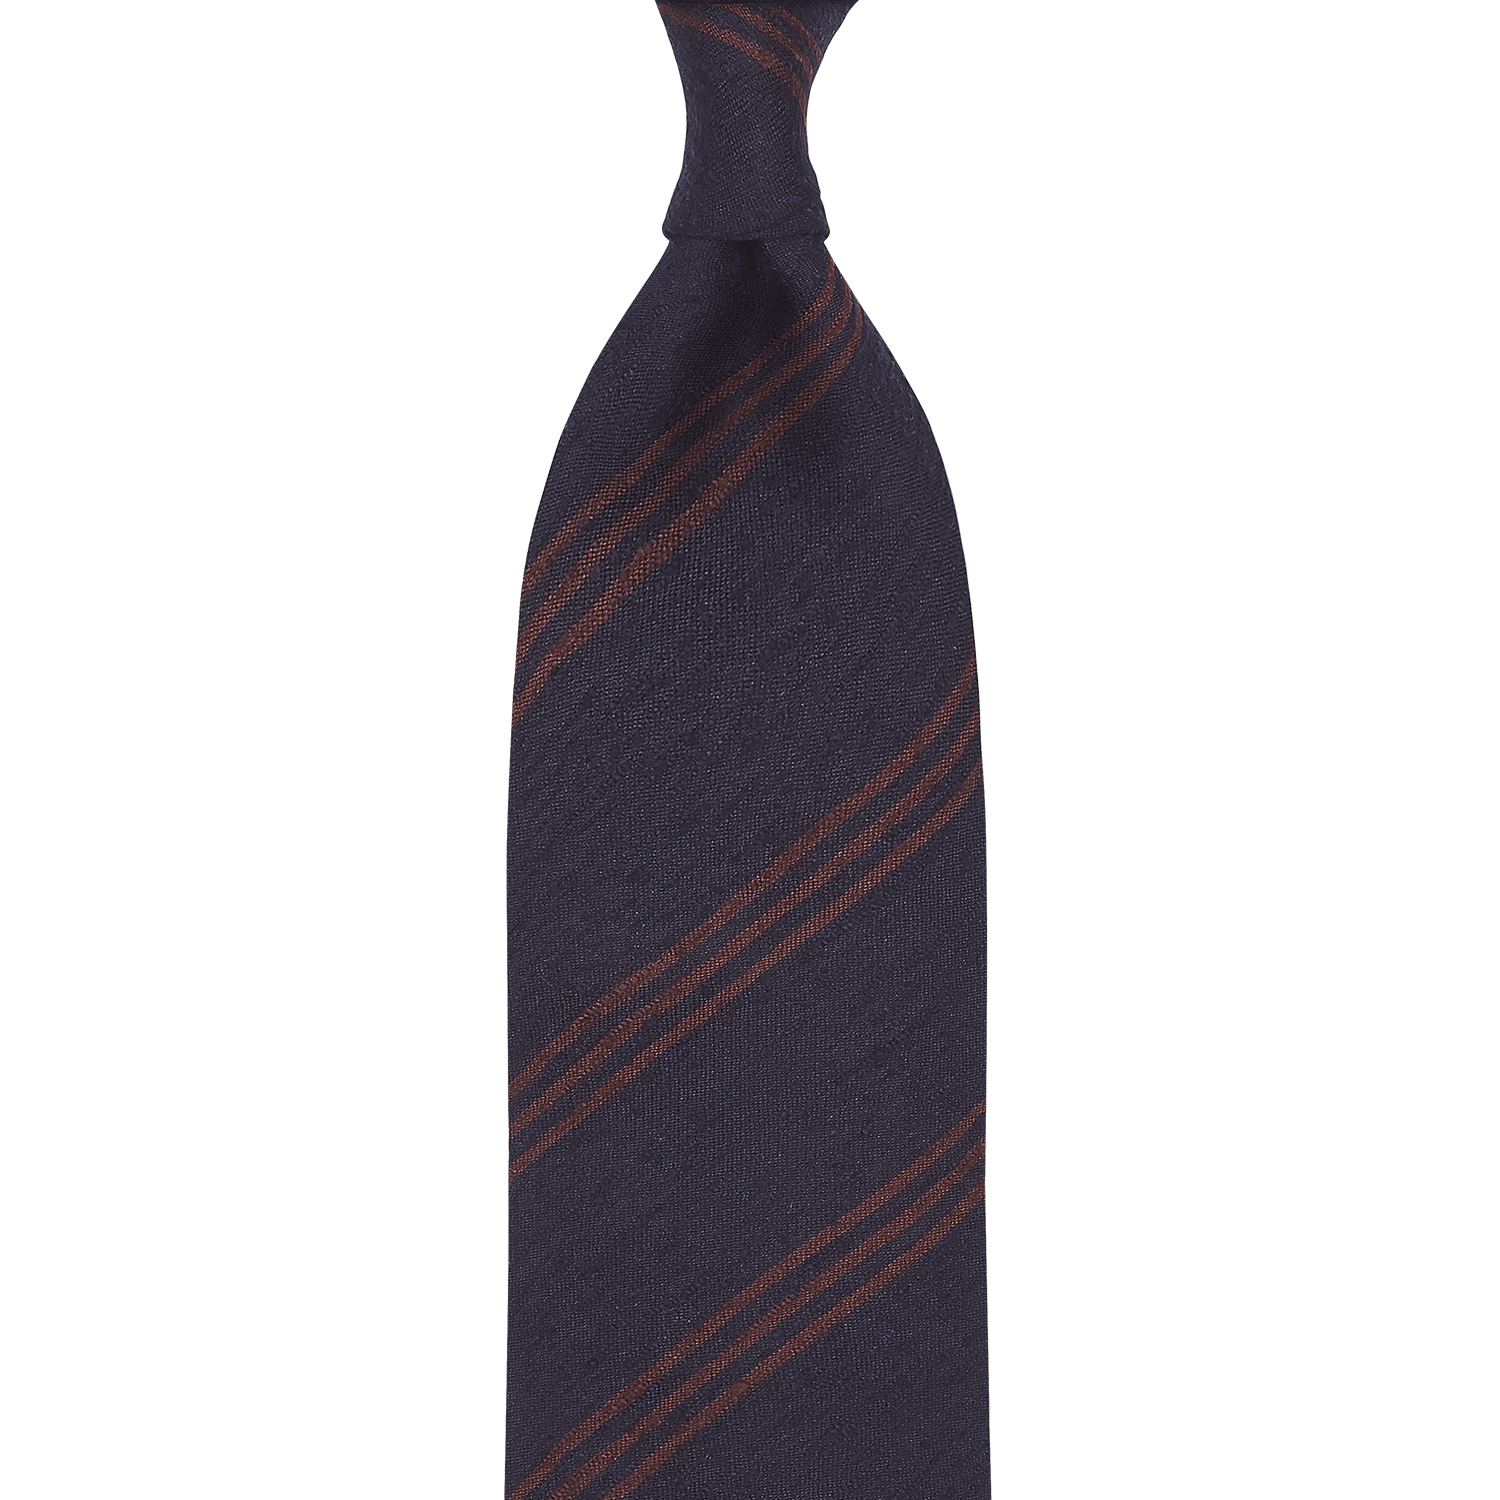 Triple Stripe Shantung Grenadine Handrolled Tie - Navy & Brown